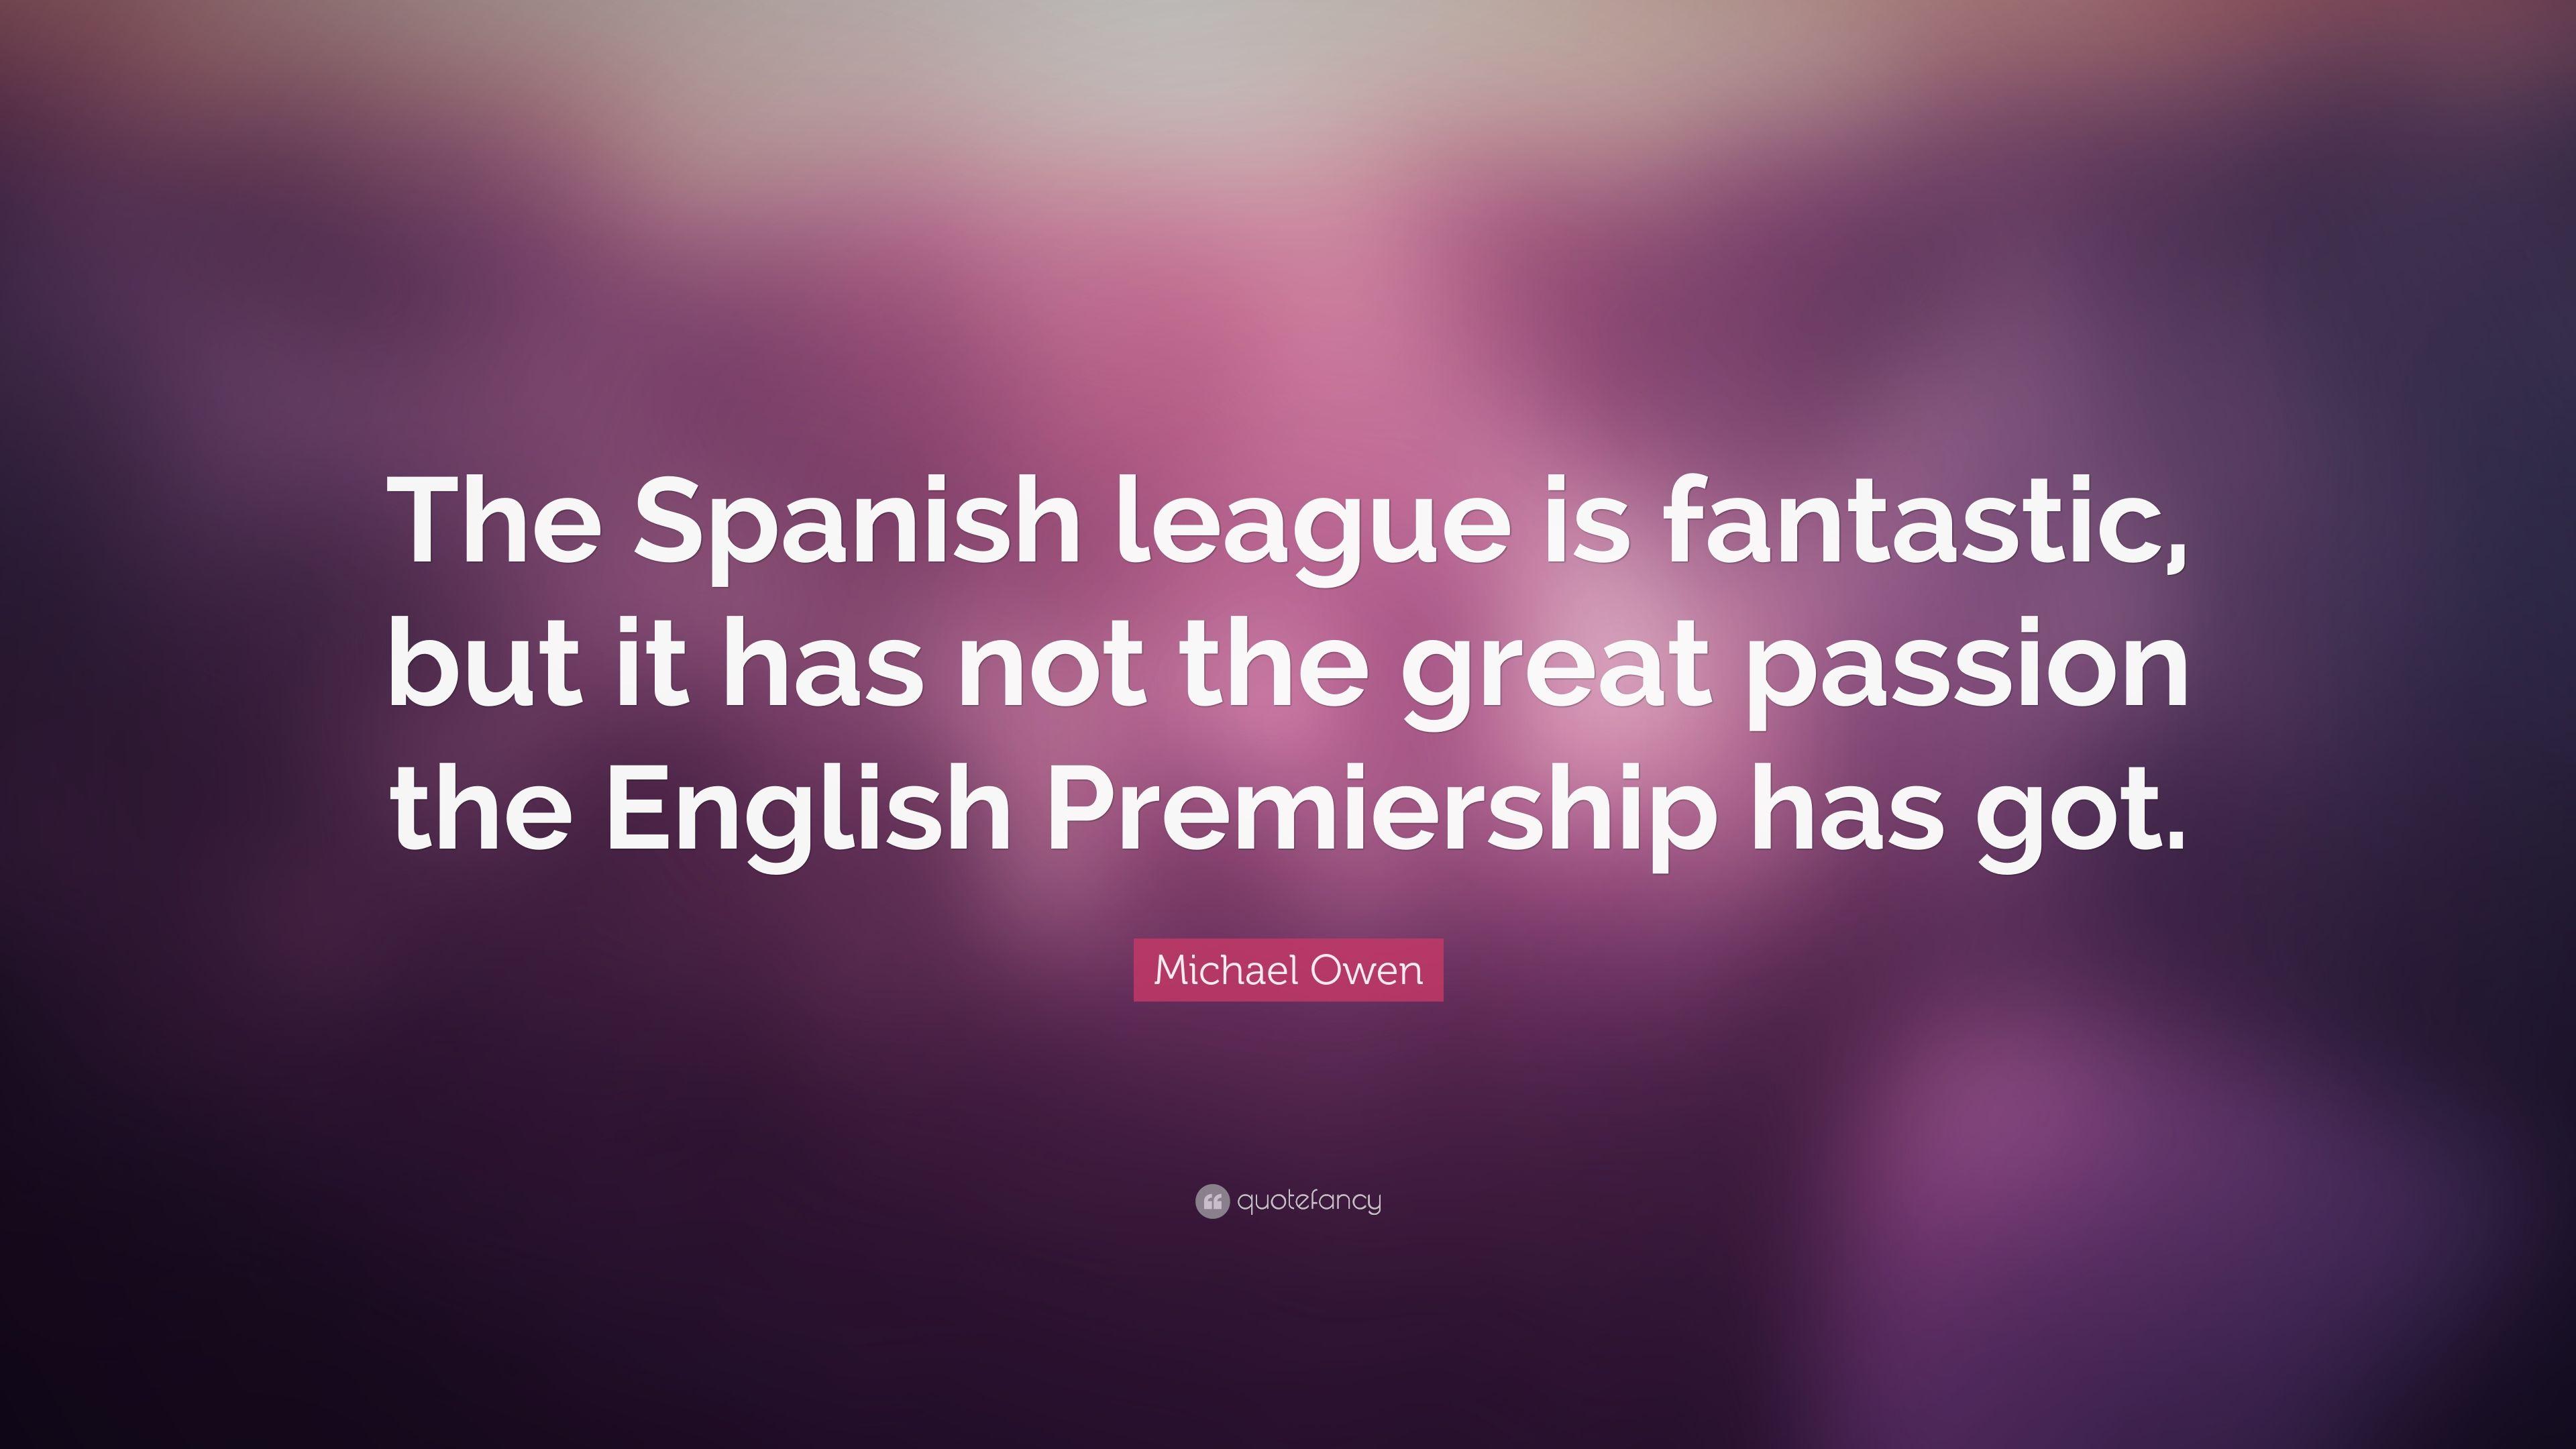 Michael Owen Quote: “The Spanish league is fantastic, but it